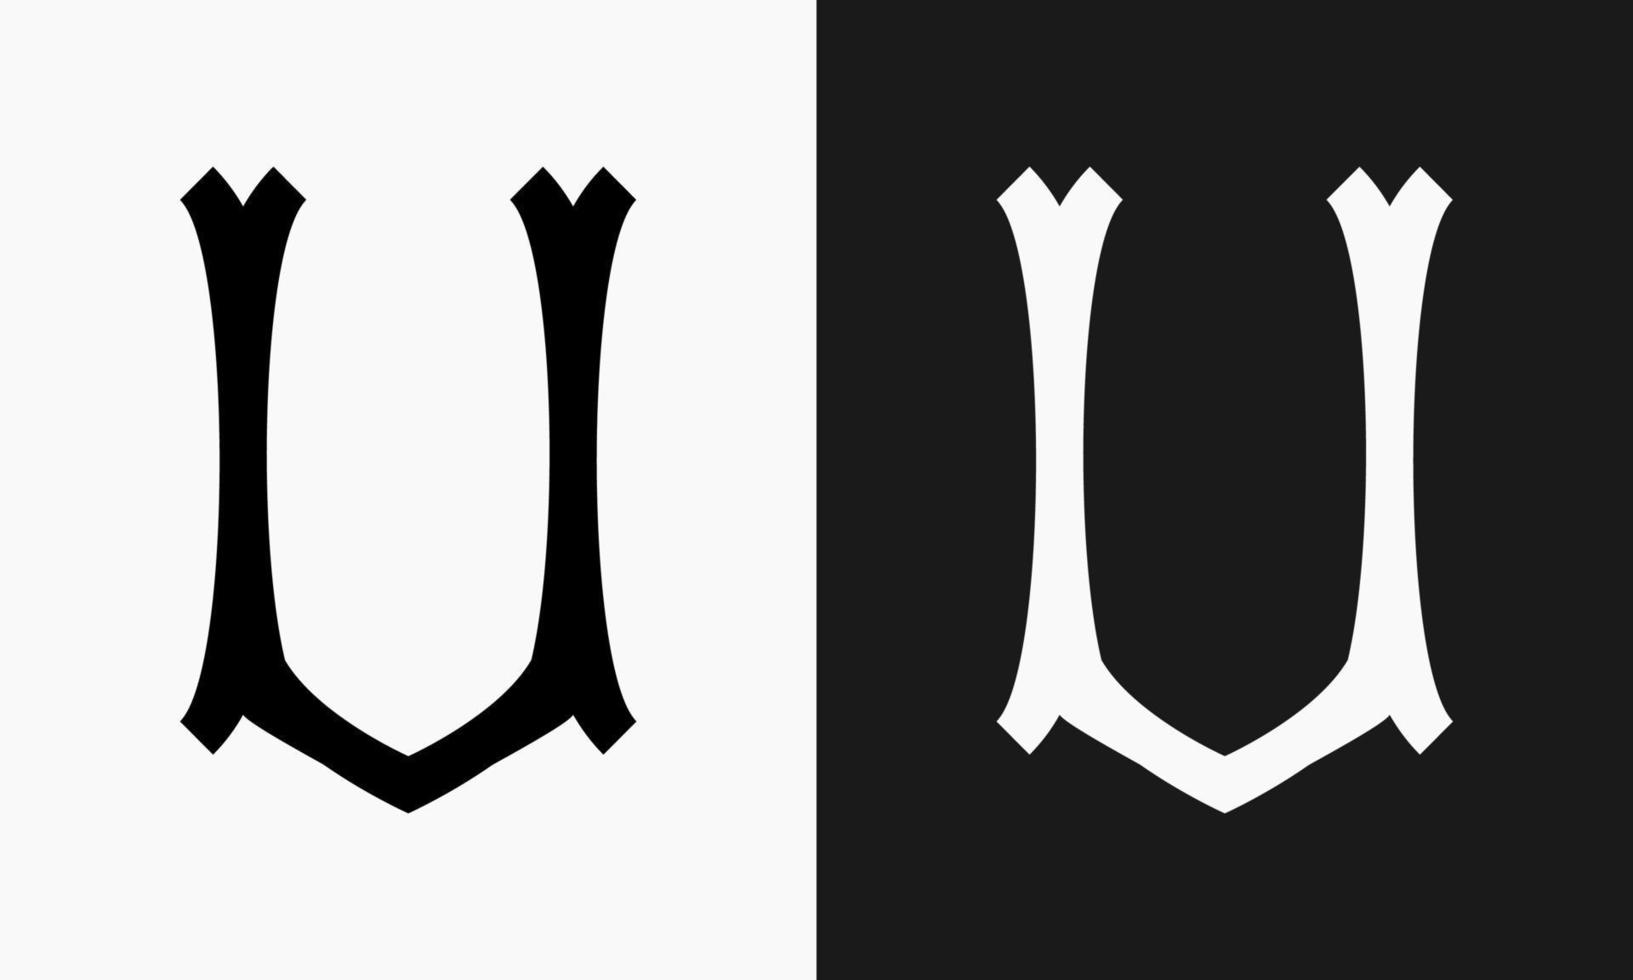 en bokstavsformad design den där har en klassisk effekt och en gotik känna. lämplig för använda sig av som en logotyp eller markör vektor